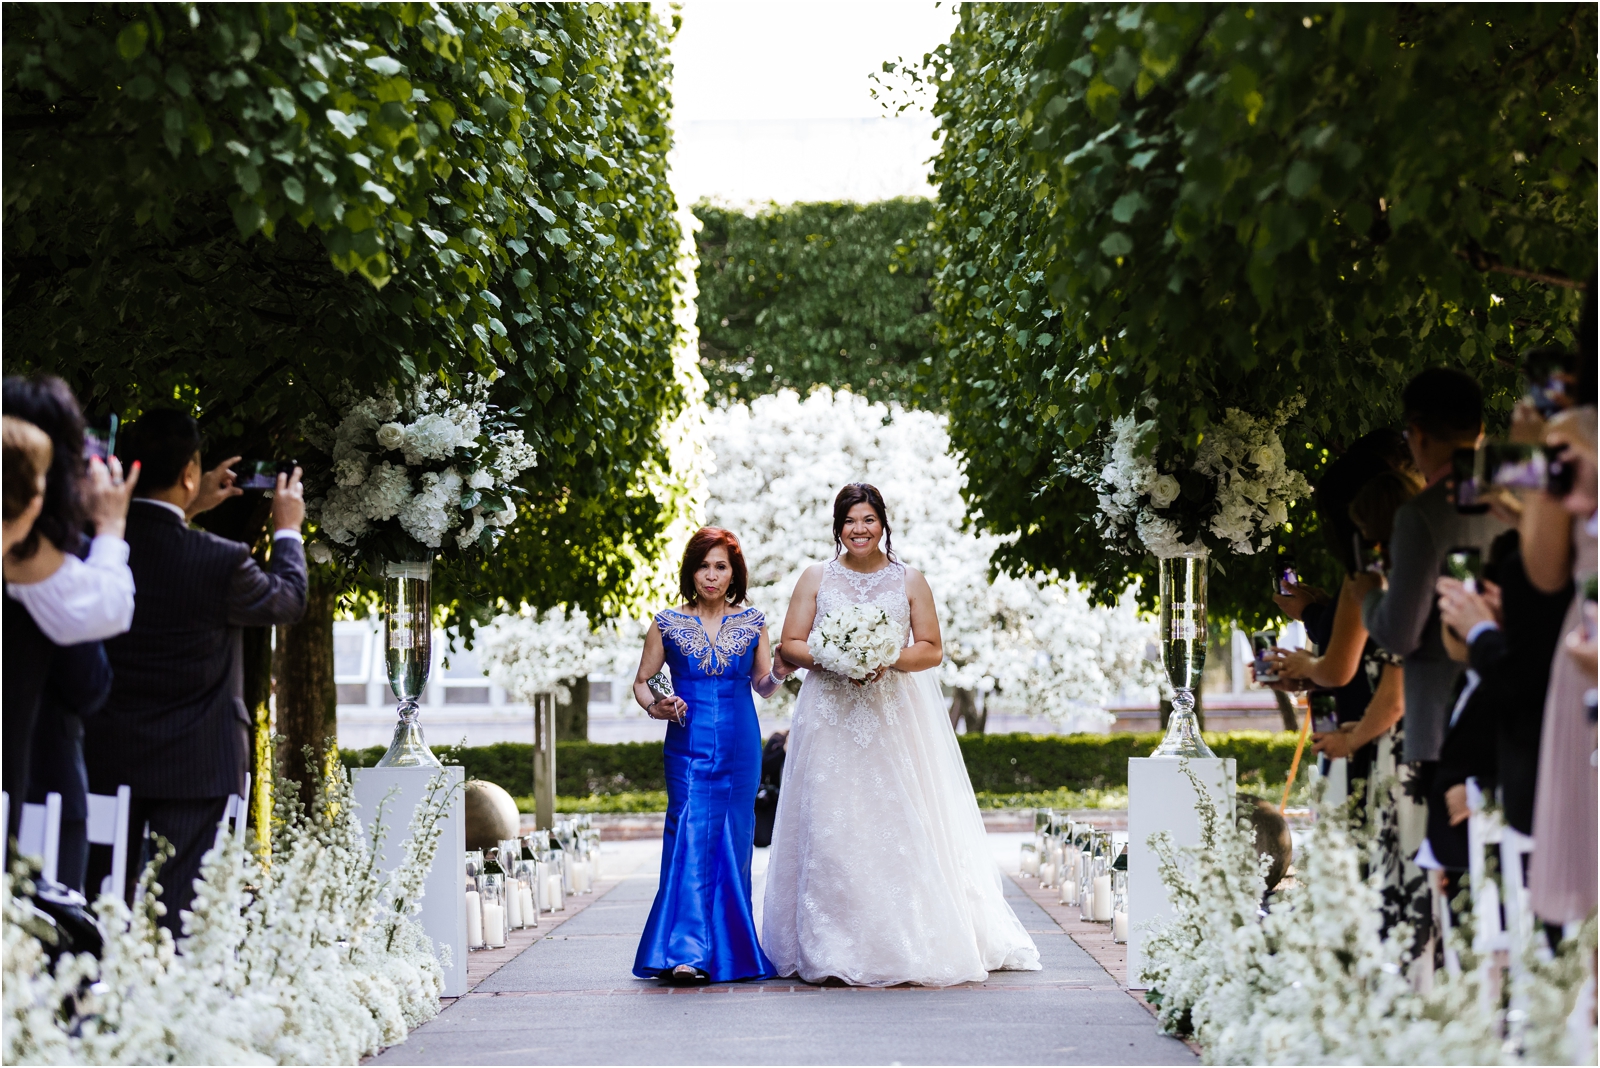 Chicago-Botanic-Garden-Wedding-Photographer-JillTiongcoPhotography_0008.jpg